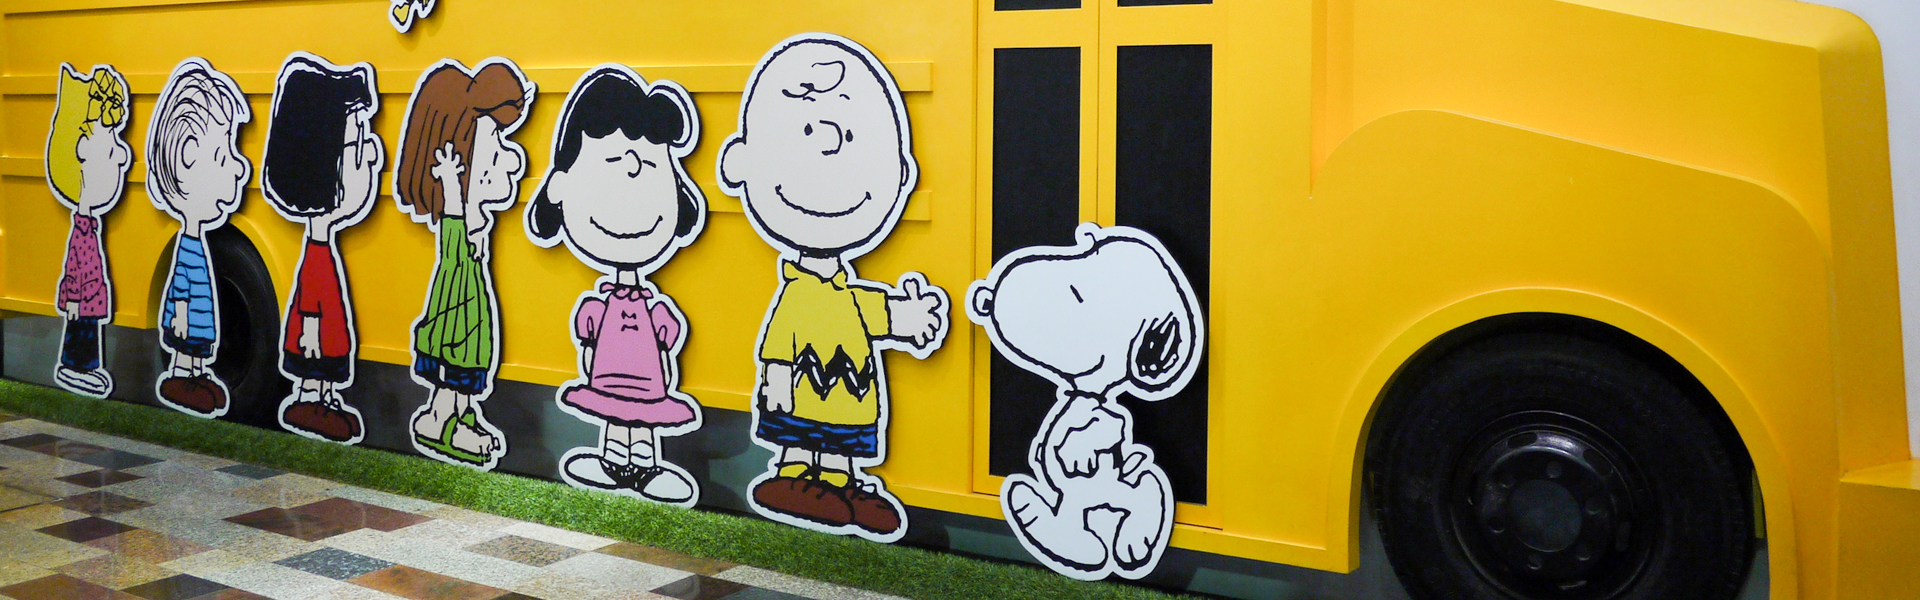 高雄 Charlie Brown Café查理布朗咖啡廳 史努比出沒 夏日芒果季餐點新上市